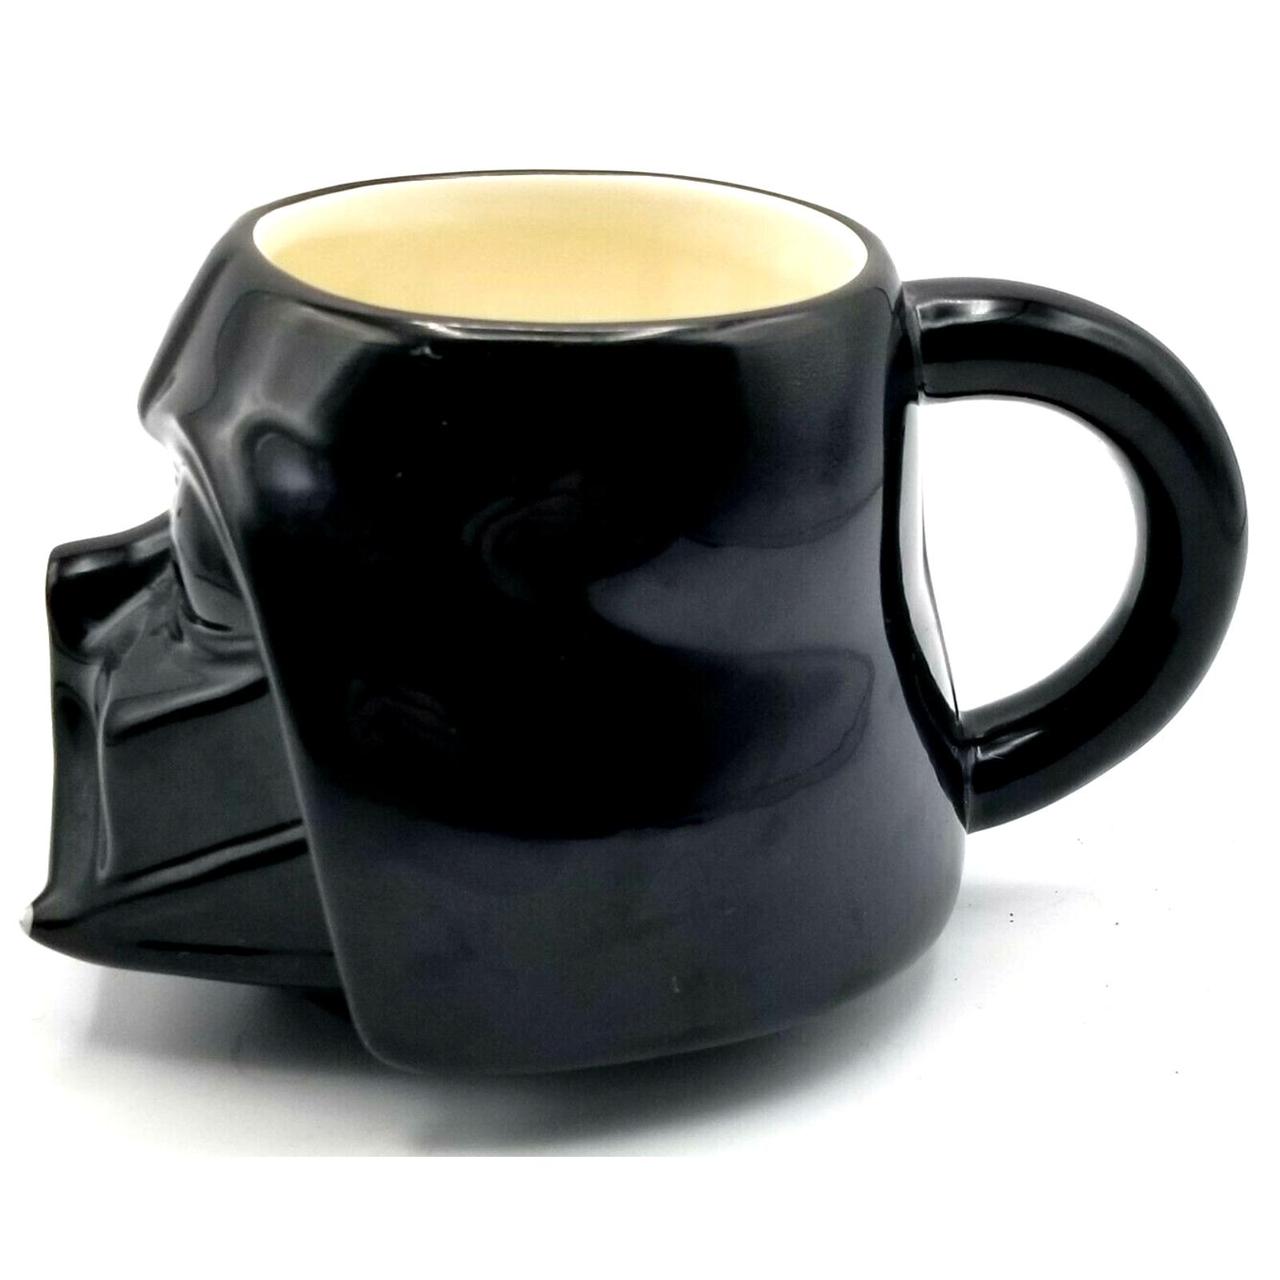 Star Wars Darth Vader/ Death Star Heat Reveal 11oz Ceramic Coffee Mug -  Black - Bed Bath & Beyond - 31412415